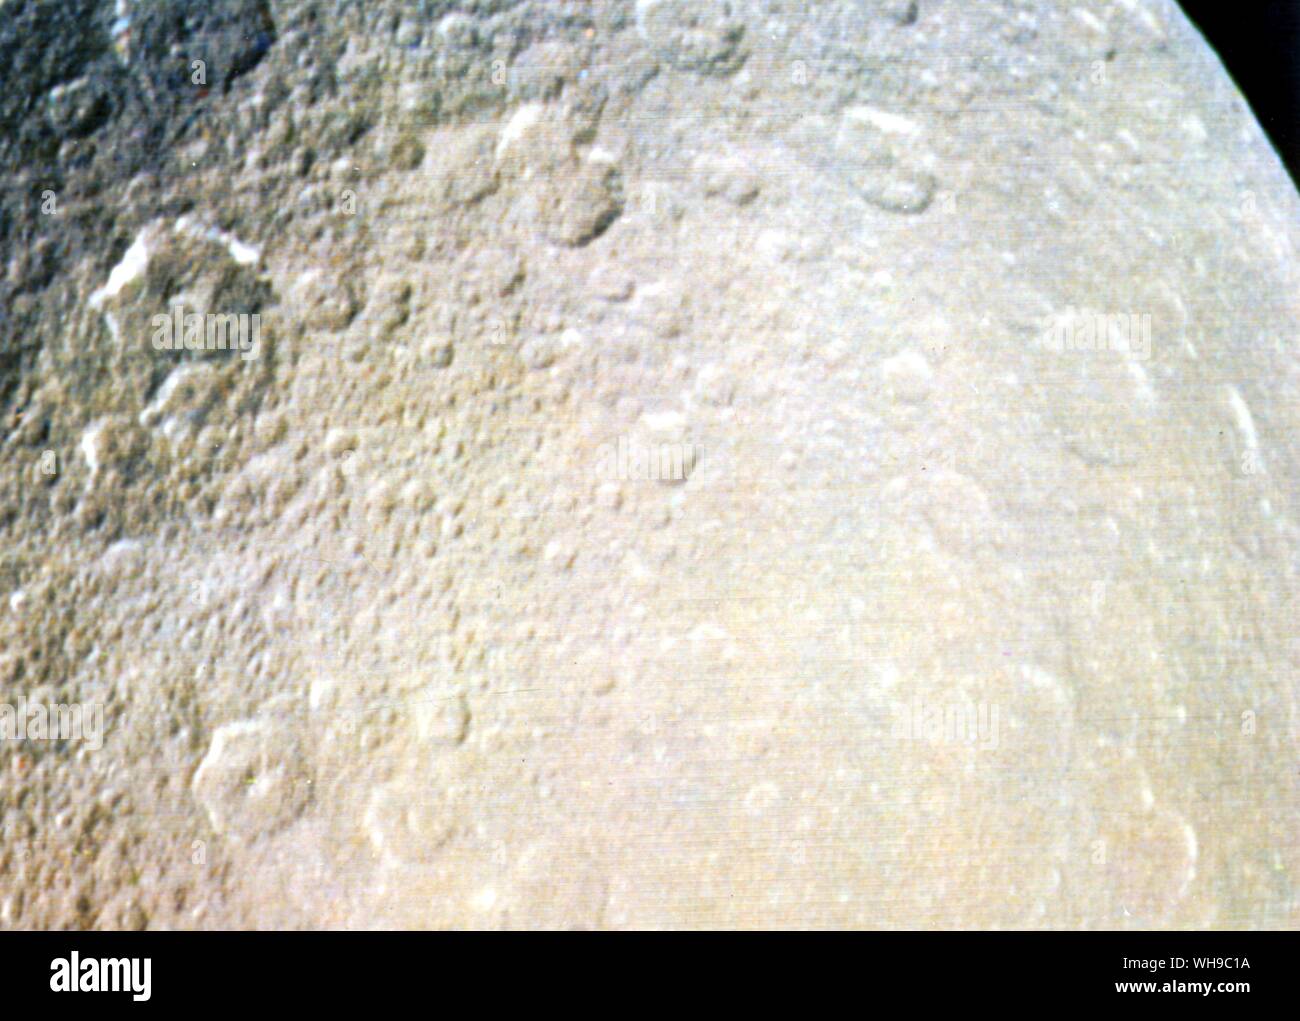 Saturne de l'espace. Lune de Saturne. Rhea, crated surface. Banque D'Images